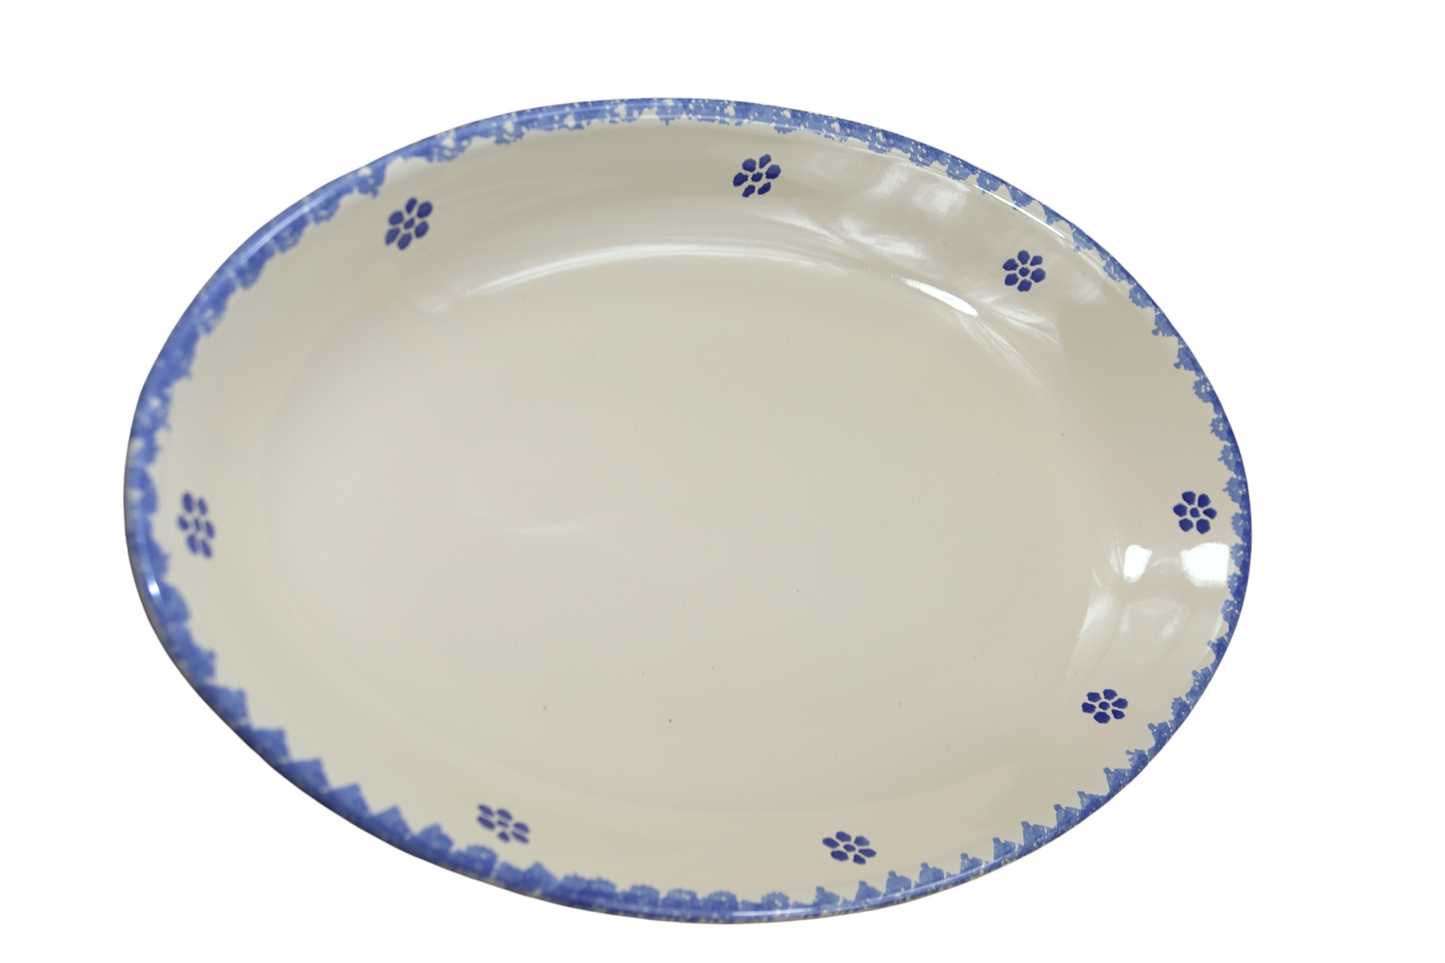 sperlunga 35 cm piatto ovale in ceramica decorato